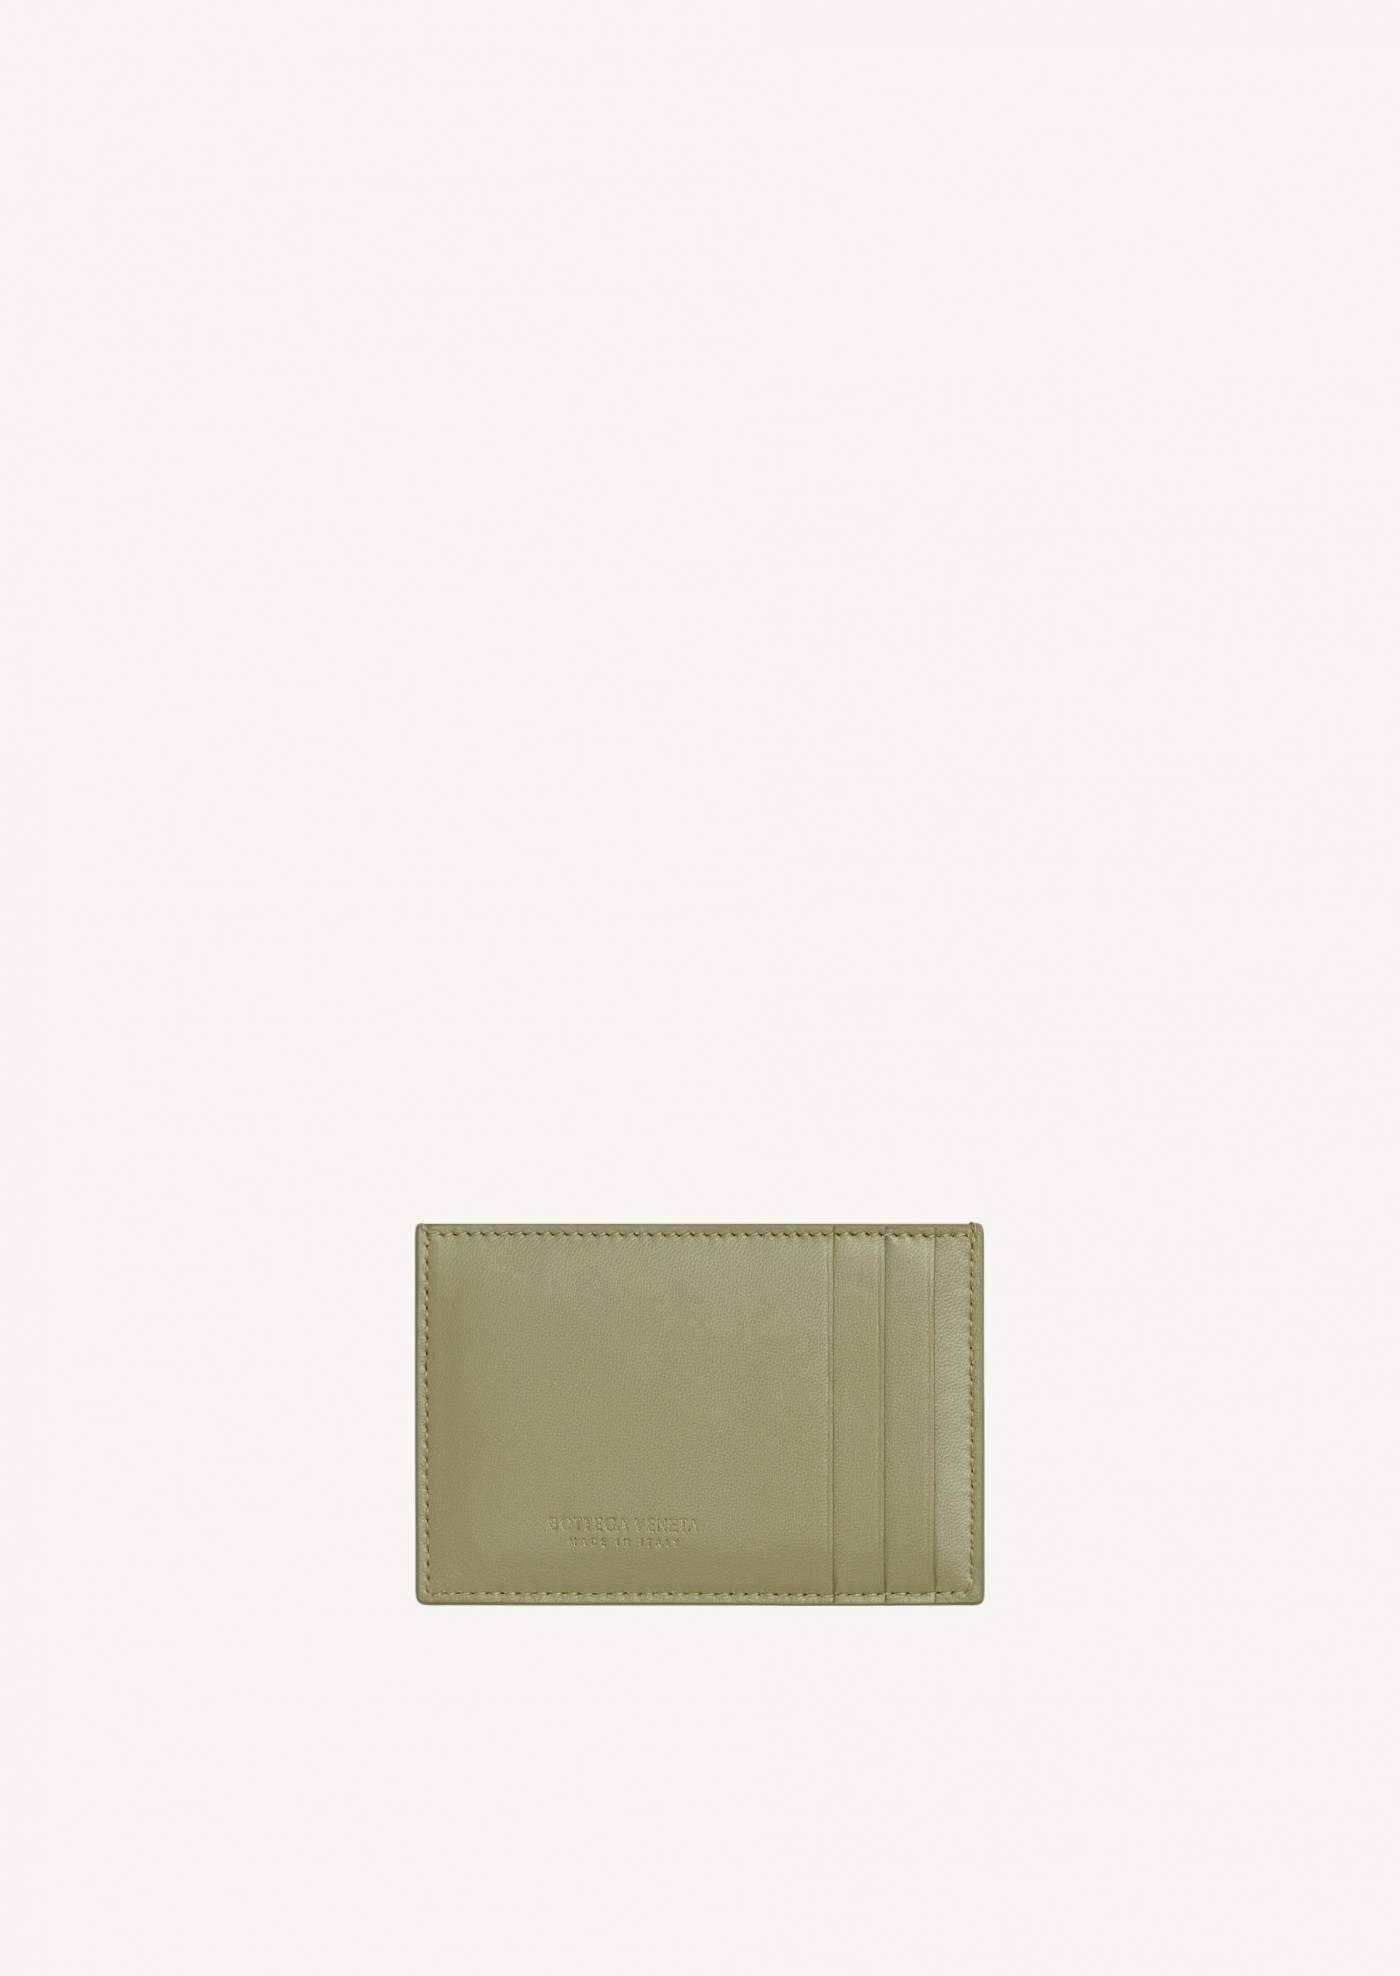 Intreccio leather card case tavertine